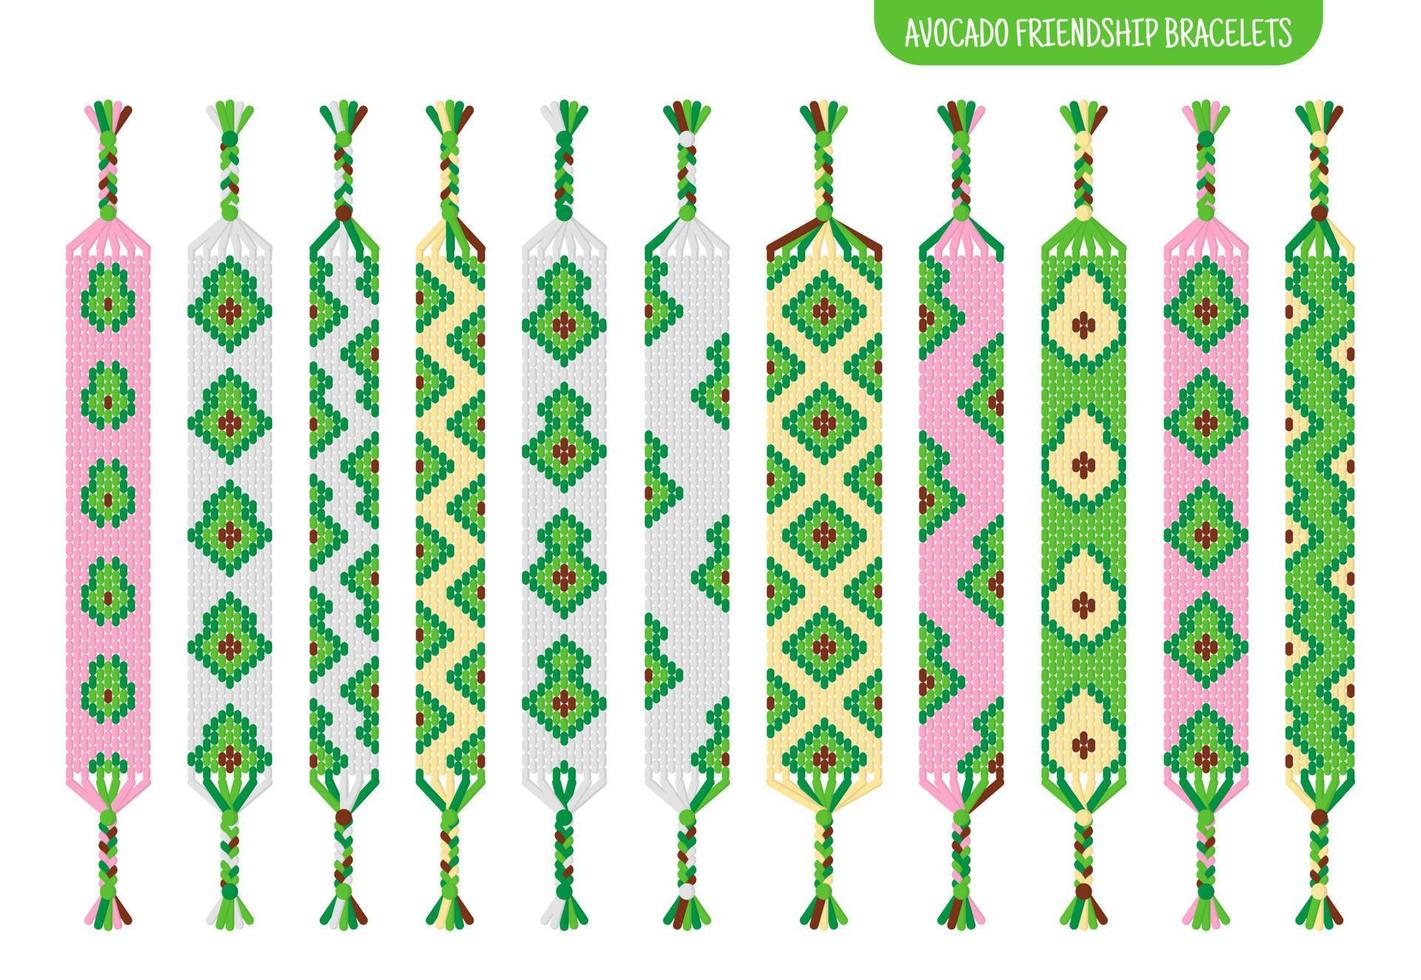 grüne avocado handgefertigte freundschaftsbänder aus fäden oder perlen. Tutorial für normale Makramee-Muster. vektor